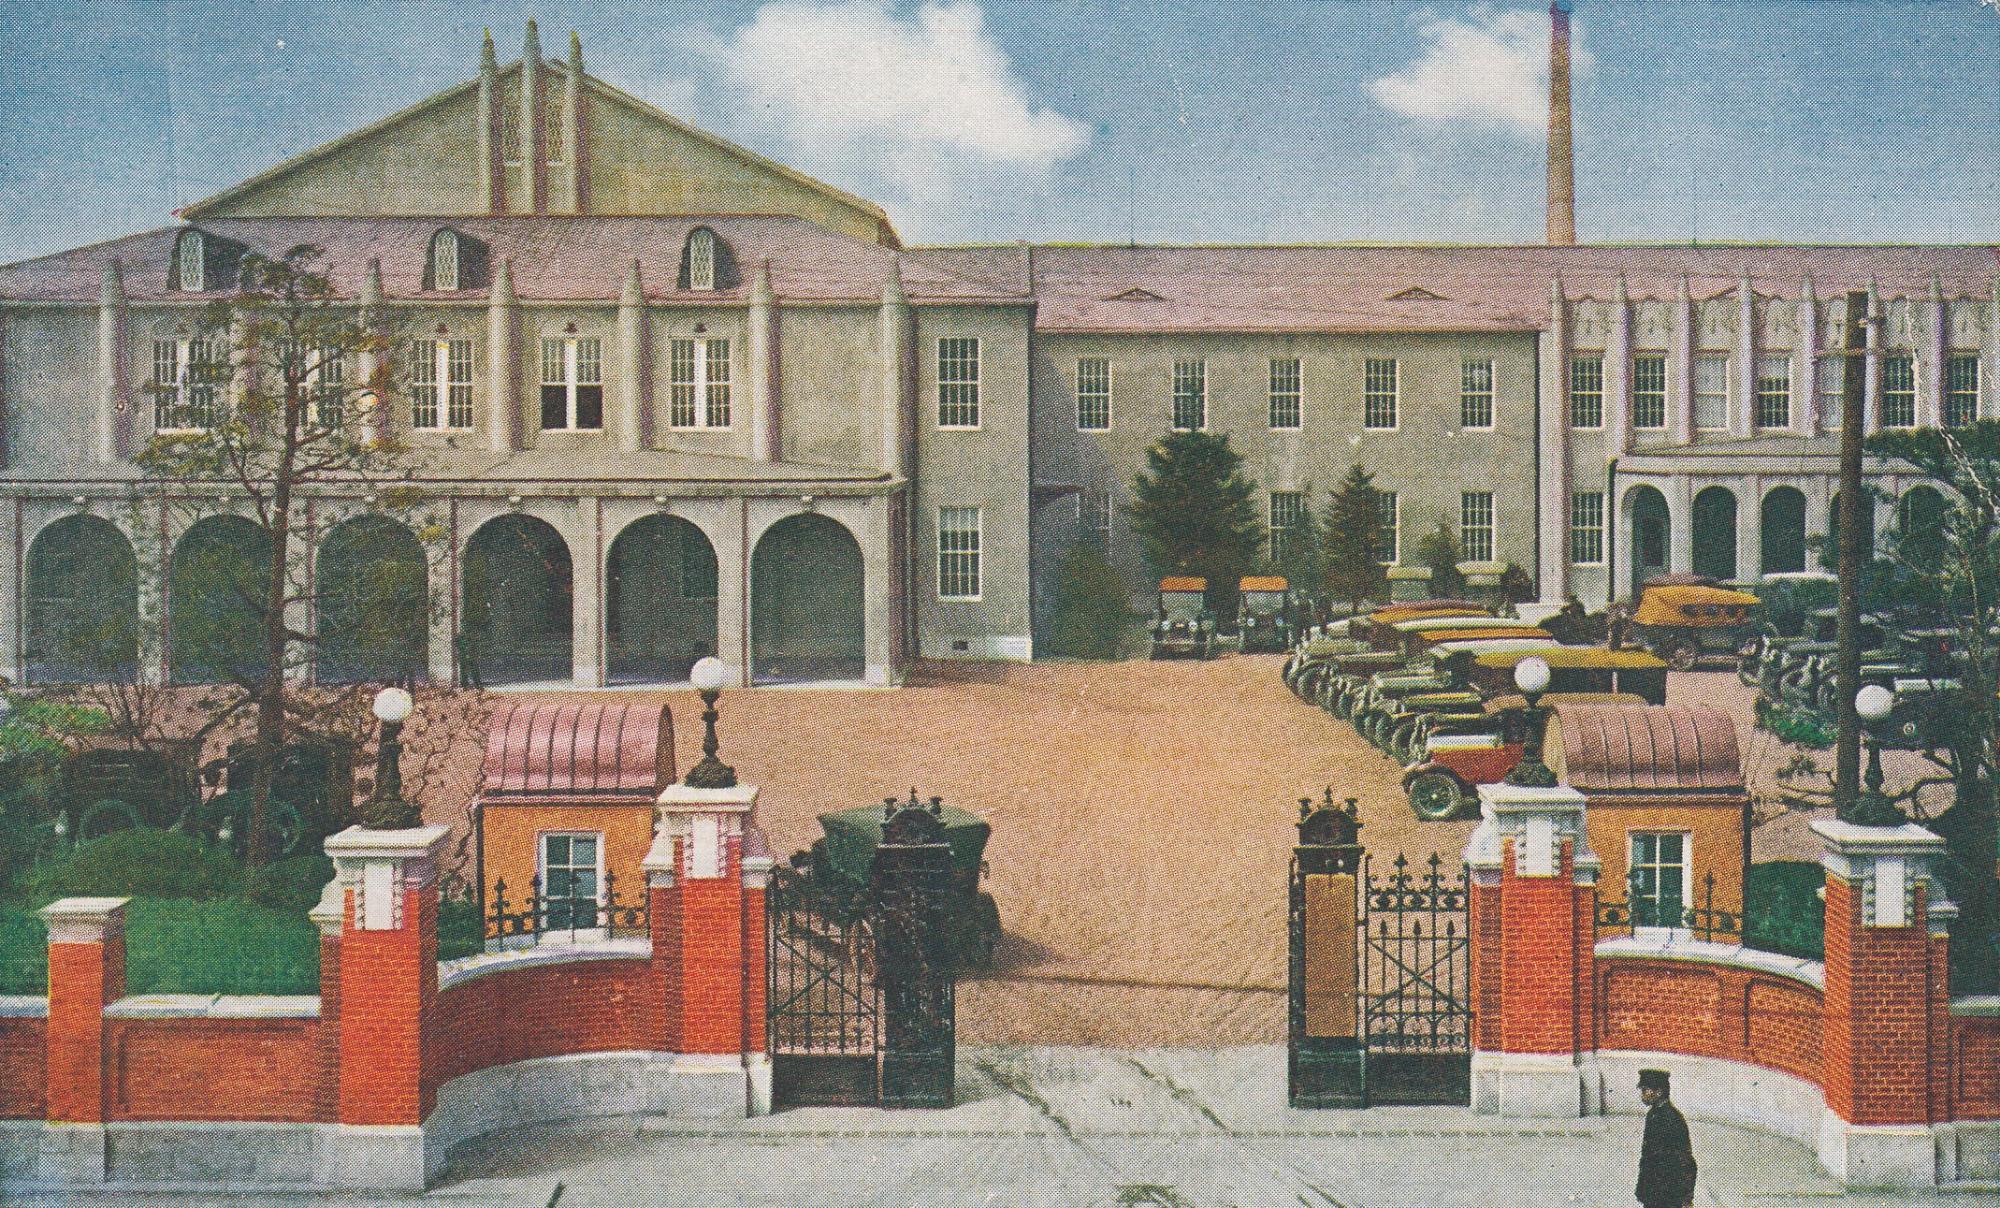 門の両隣に小さな建物が2つあり、駐車場内に車が停車している第三次仮議事堂の建物全体が描かれたイラスト